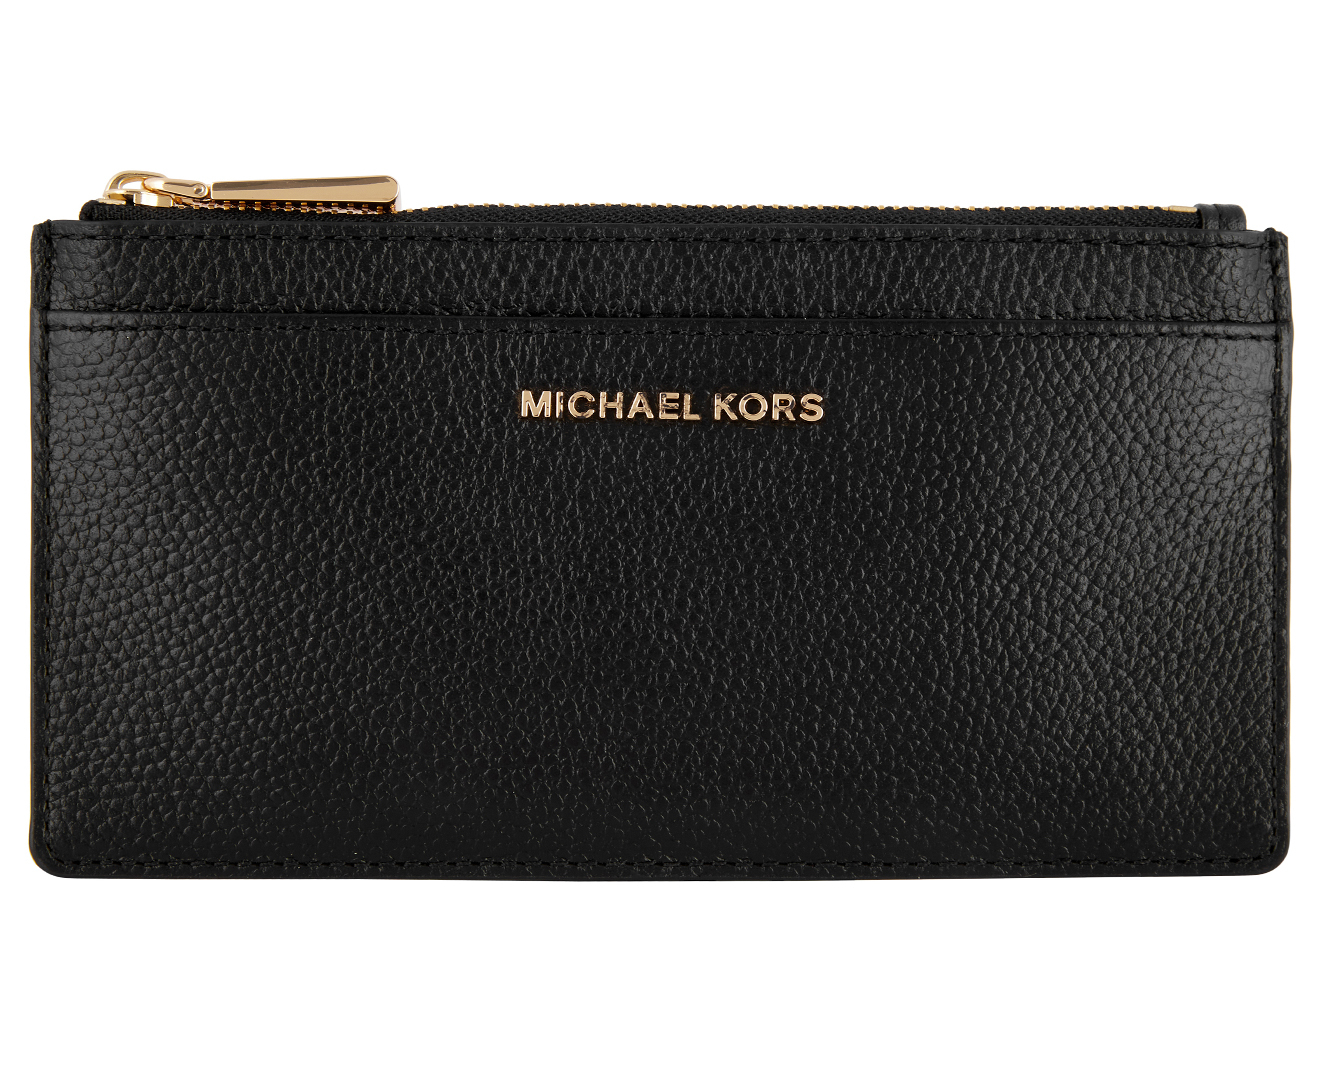 Michael Kors Jet Set Large Slim Card Case Wallet - Black 